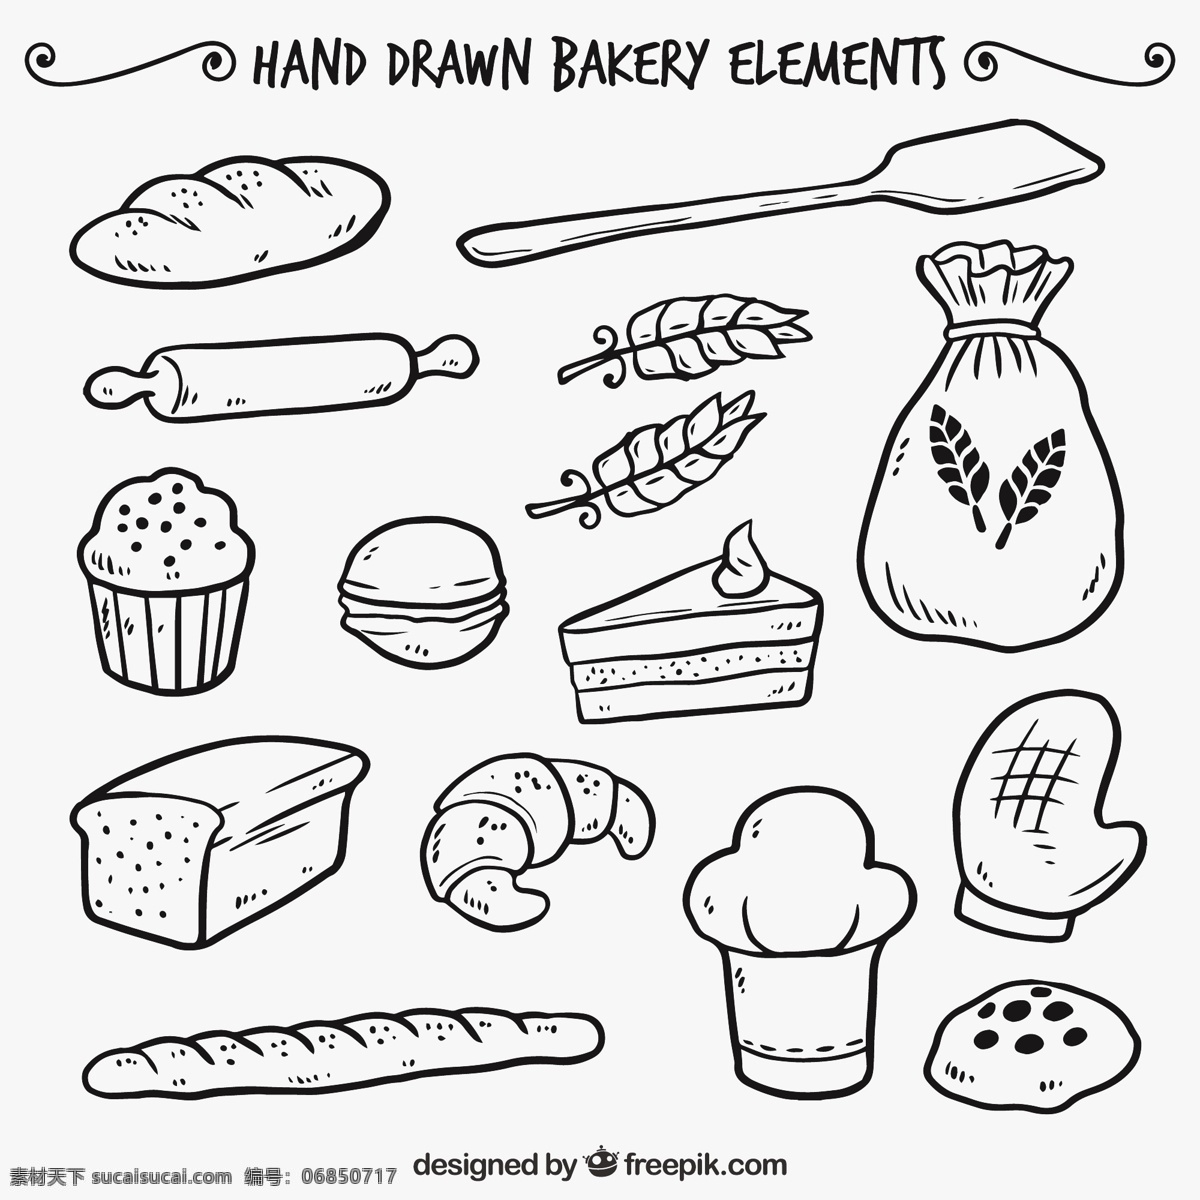 手绘面包店 食品 菜单 手 餐厅 蛋糕 家庭 厨房 面包 绘制 烹饪 有机 甜 绘图 健康 元素 饮食